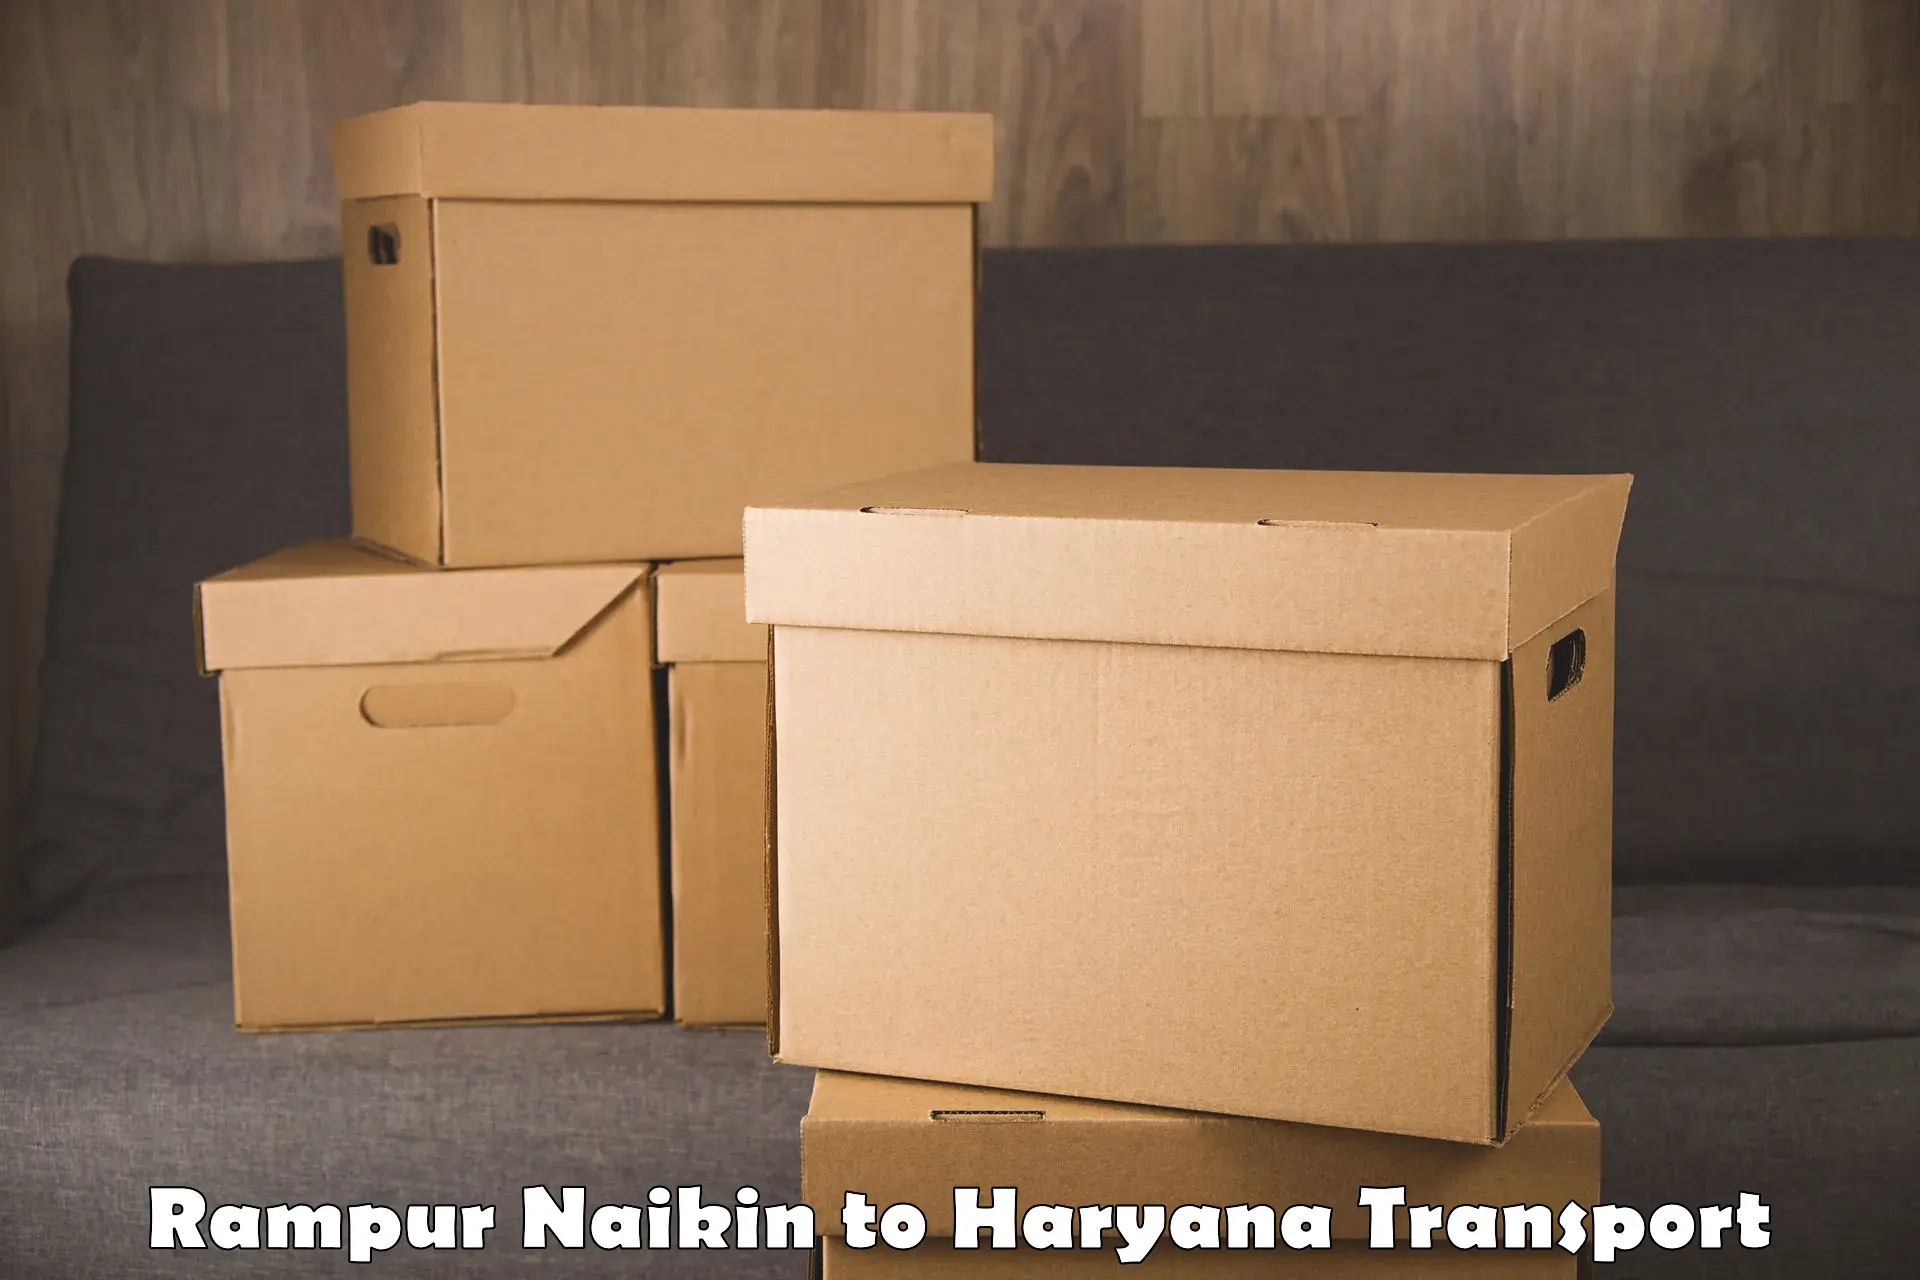 Interstate transport services Rampur Naikin to Barwala